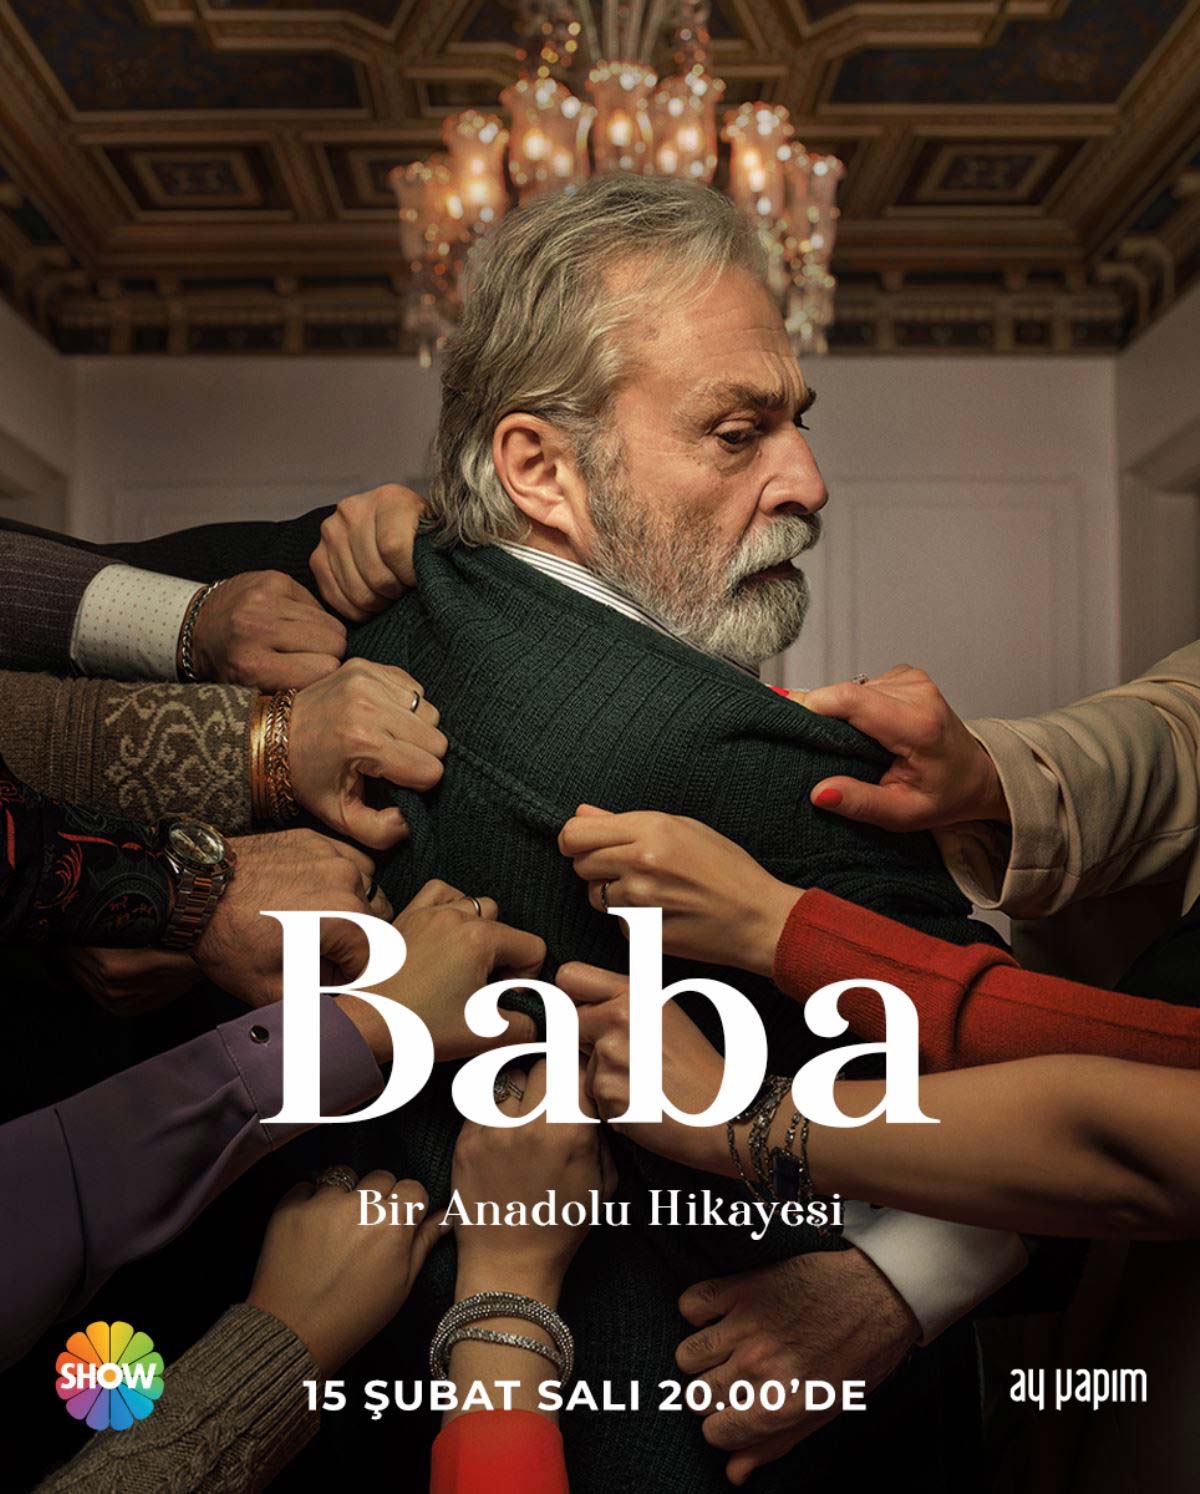 Haluk Bilginer'in başrolünde olduğu 'Baba' dizisinin tanıtım afişi yayınlandı